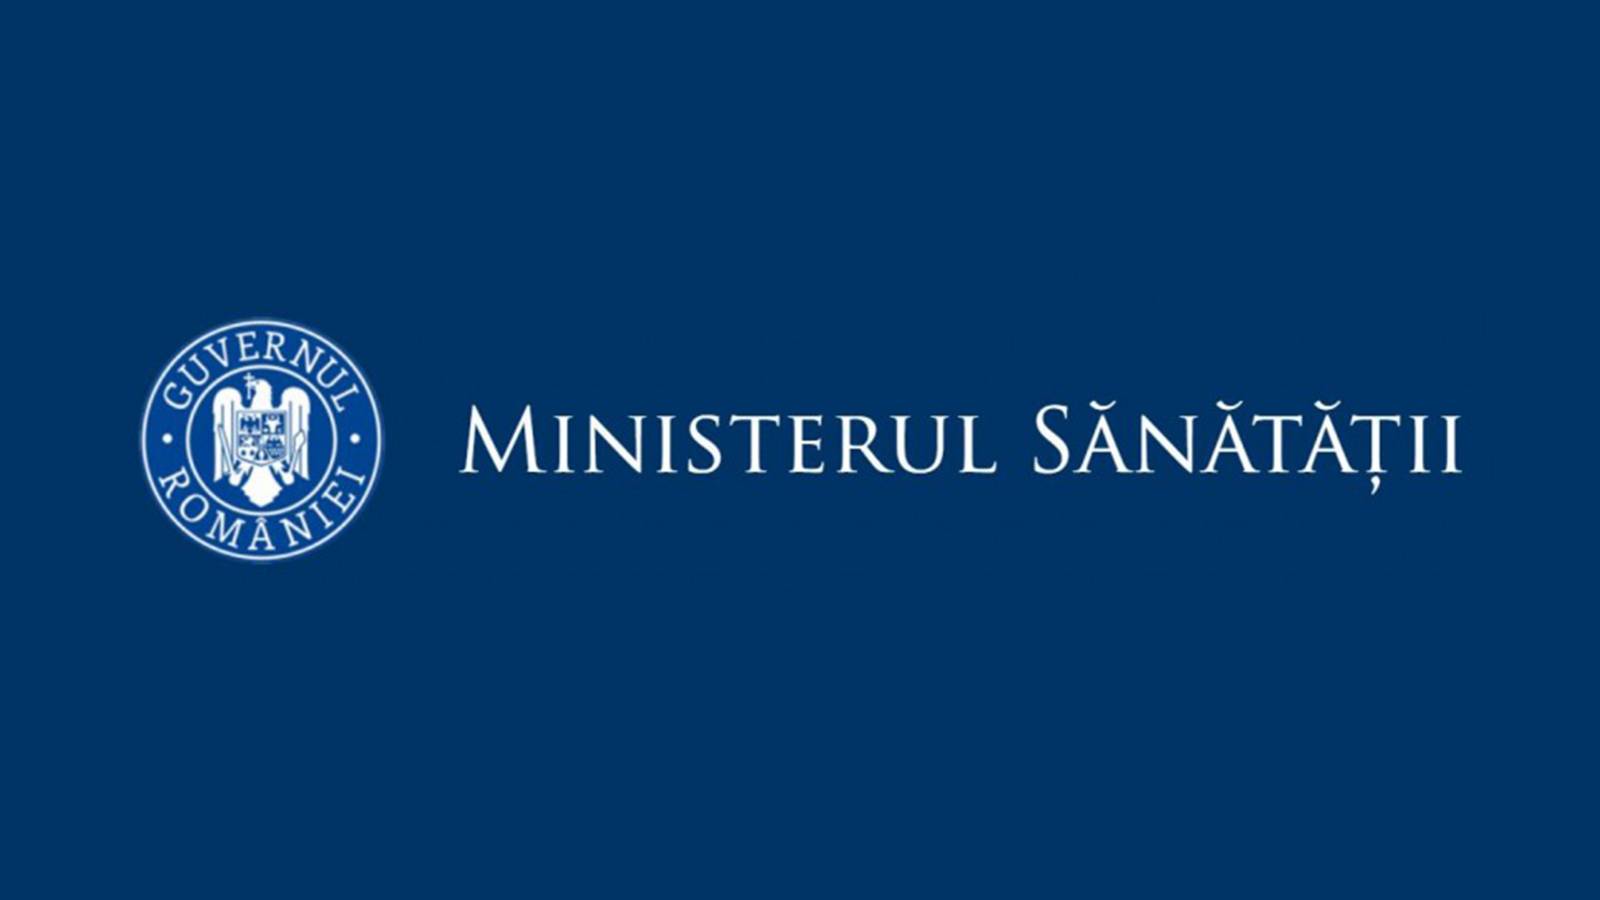 Ministerul Sanatatii Ratele Incidenta Romania 21 Mai 2021